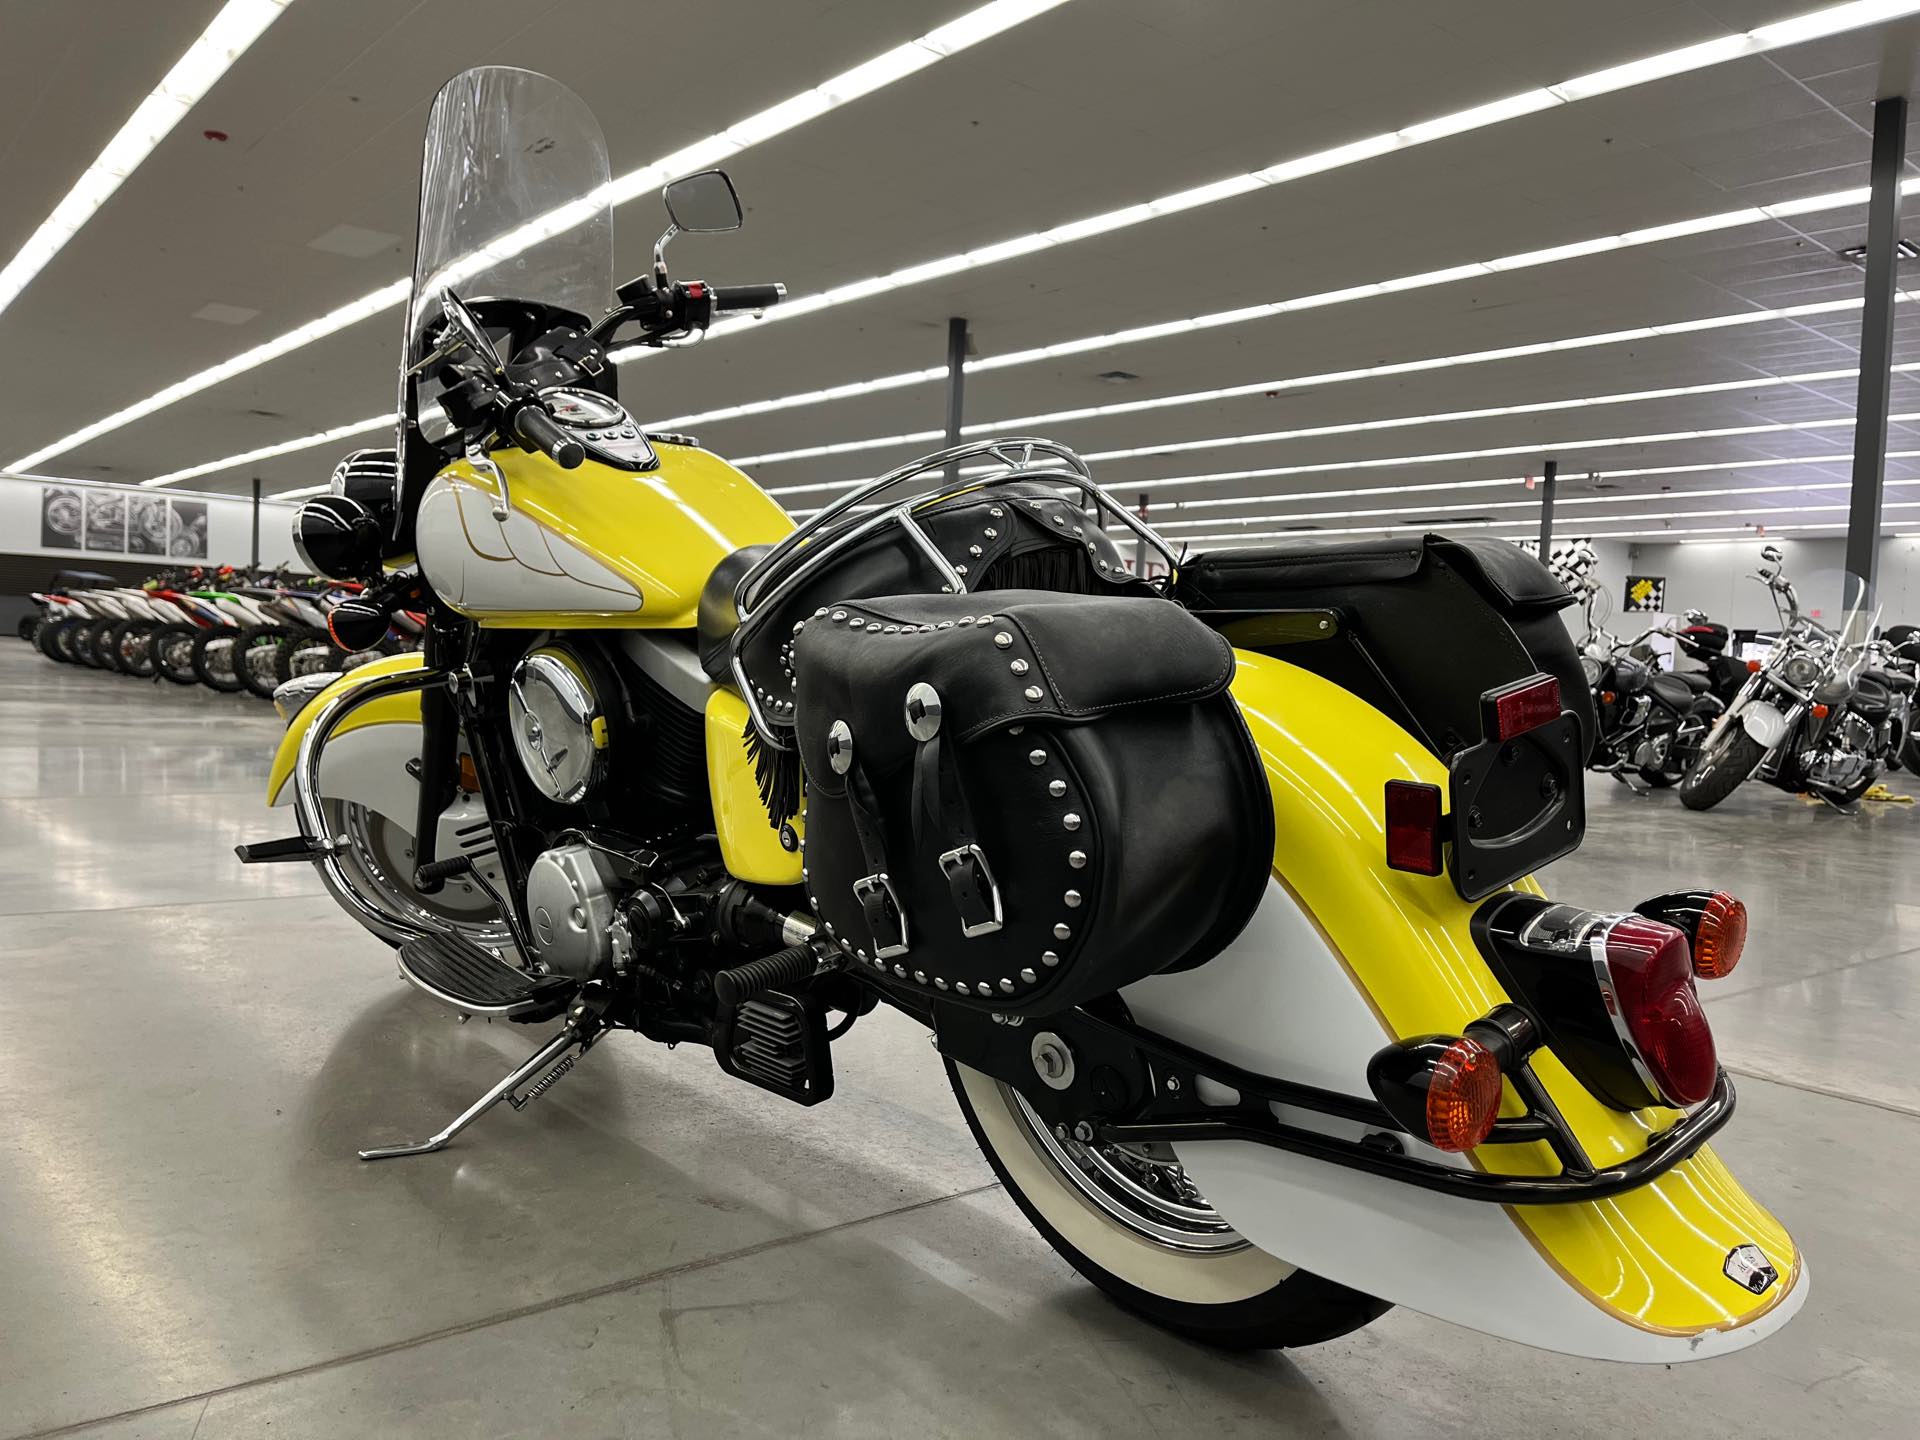 2000 KAWASAKI VN1500 at Aces Motorcycles - Denver